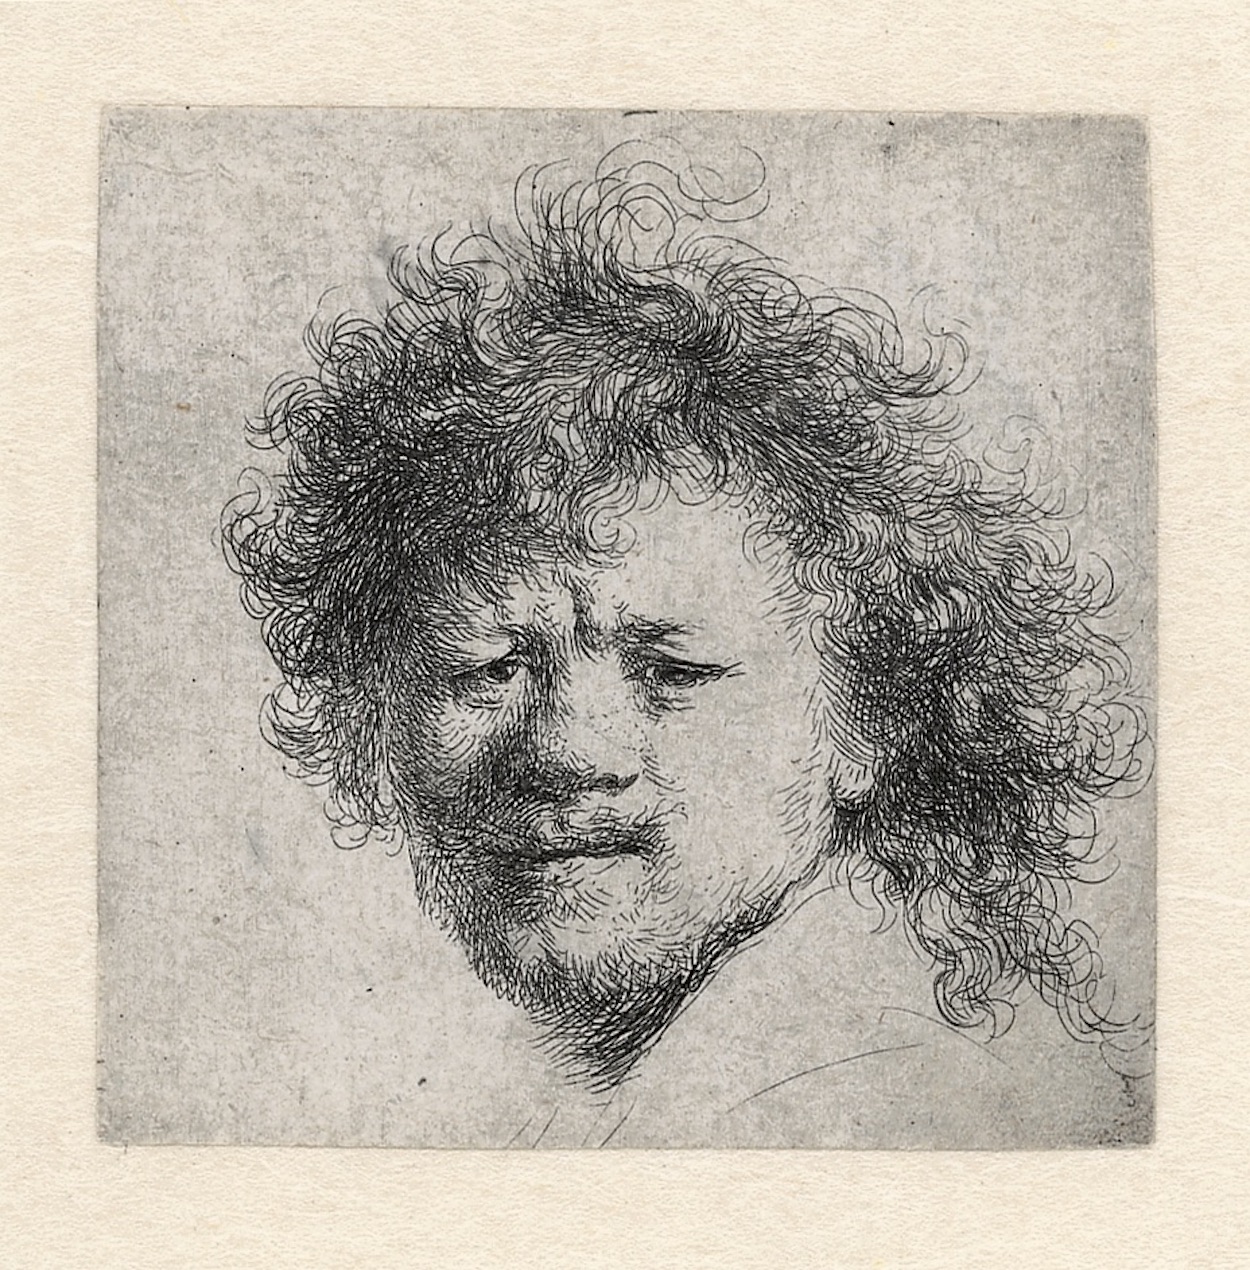 부스스한 머리의 자화상 (Self-Portrait with Bushy Hair) by Rembrandt van Rijn - 1631년경 - 90 × 76 mm 